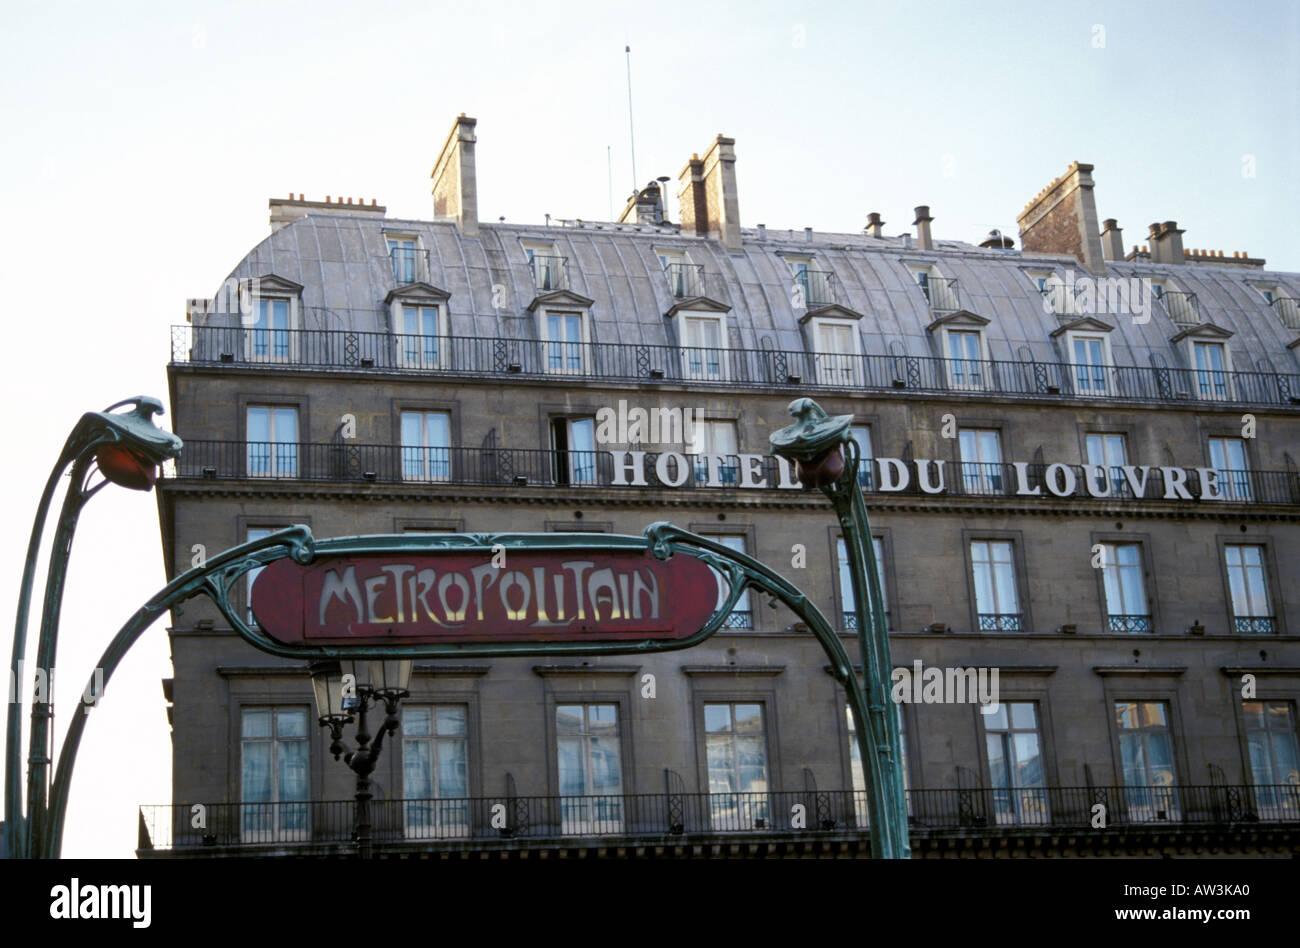 Hotel du Louvre and Metropolitan sign, Paris, France Stock Photo